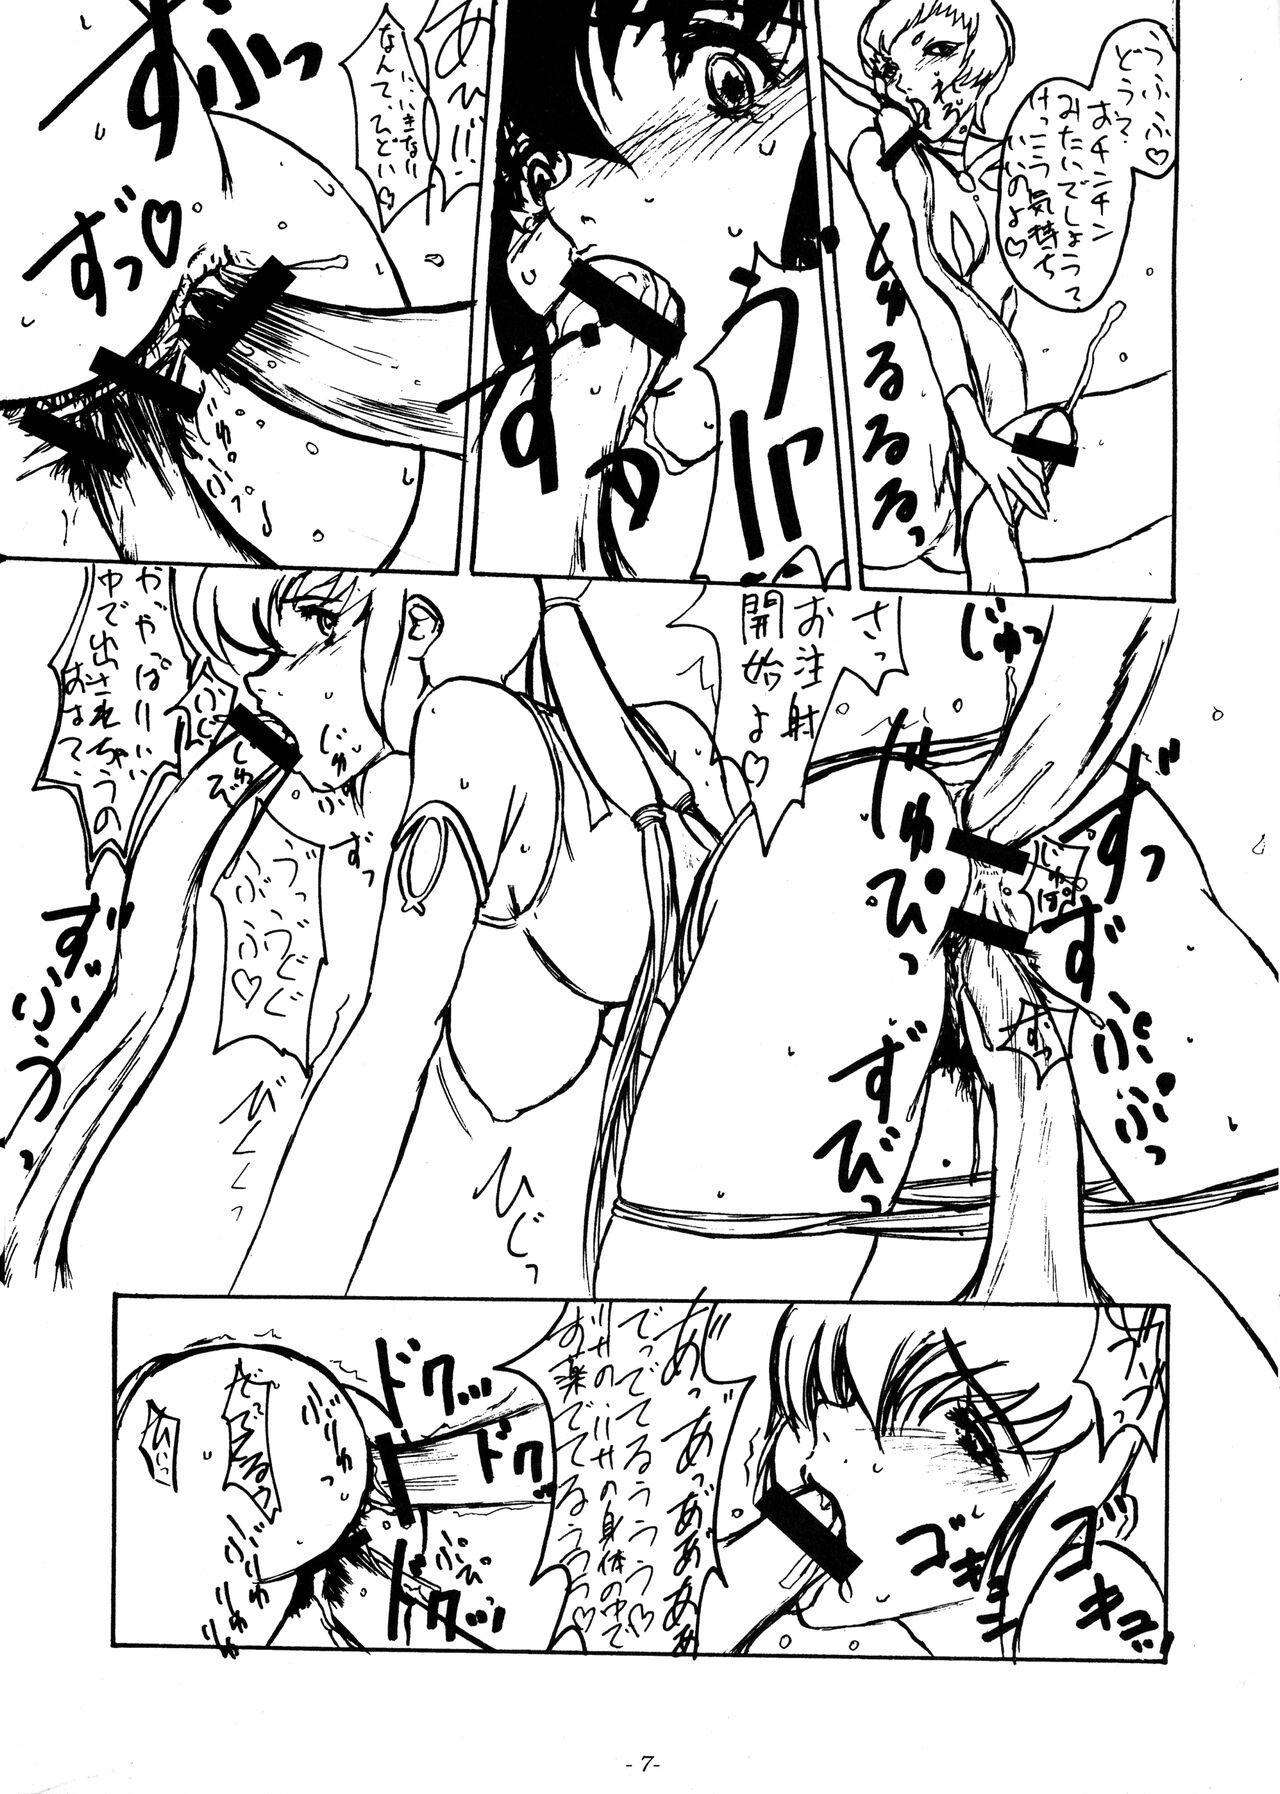 This Mieru? Kono watashi no koumon ni iyarashiku kui komu FUNDOSHI Sixtynine - Page 9